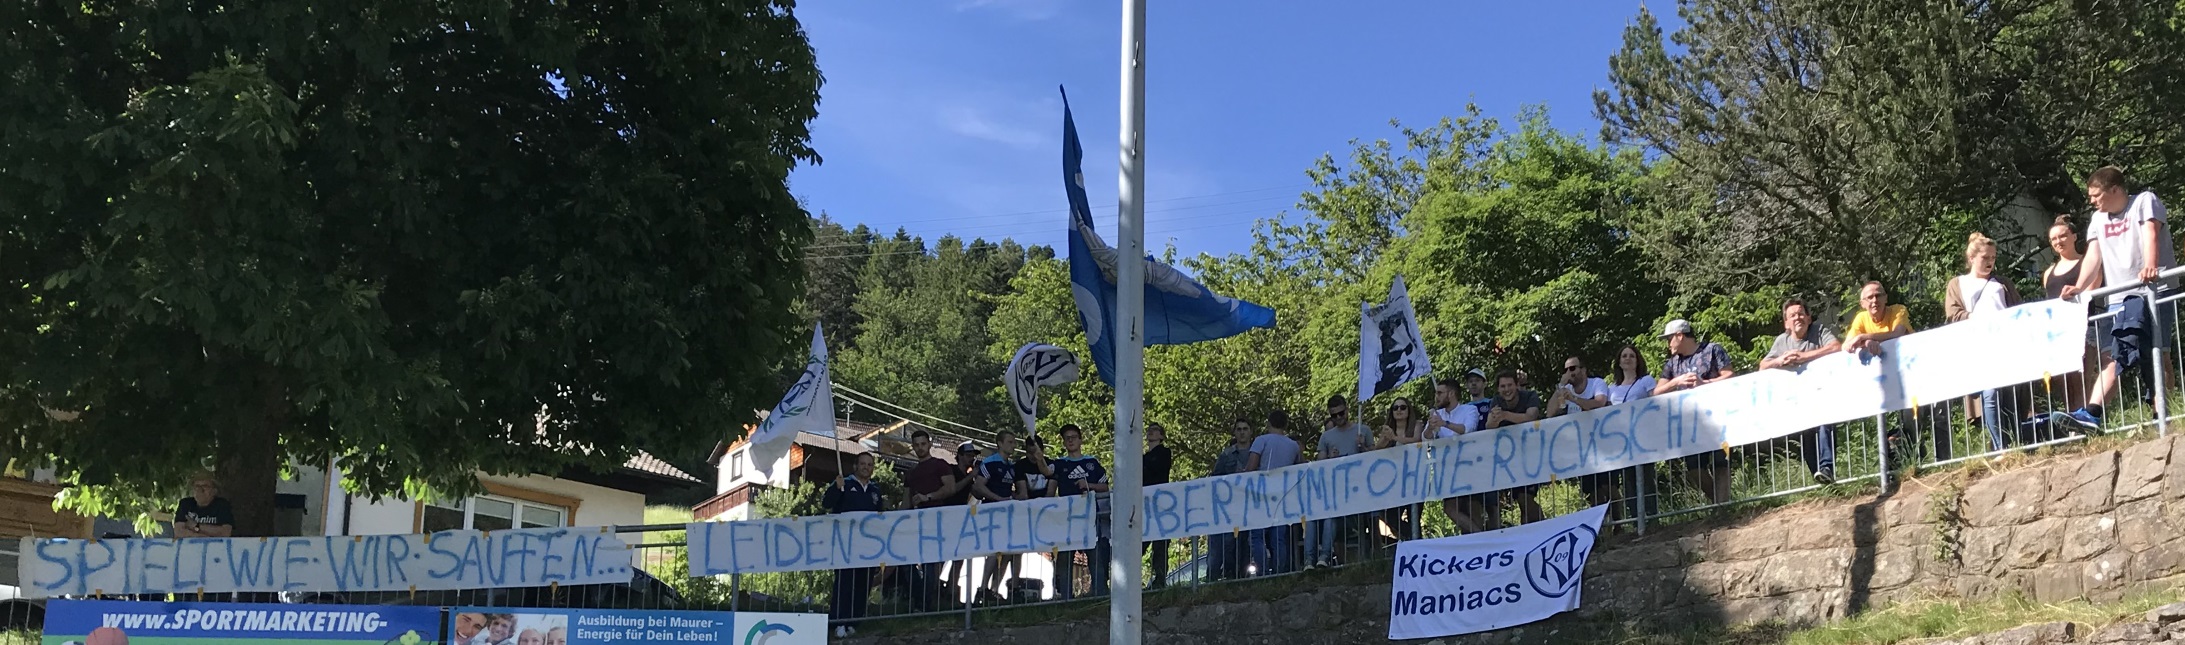 Heimspiel gegen Hardt (08.06.2019)